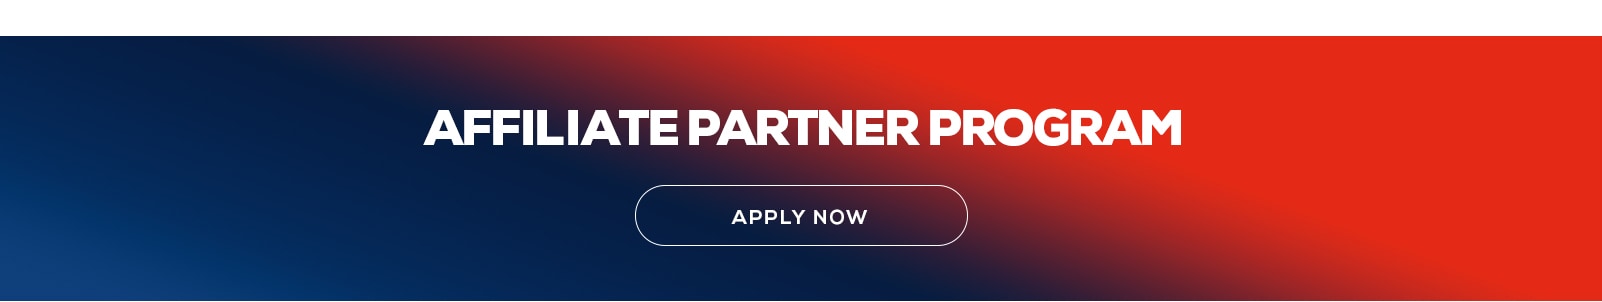 Affiliate Partner Program. Apply Now.